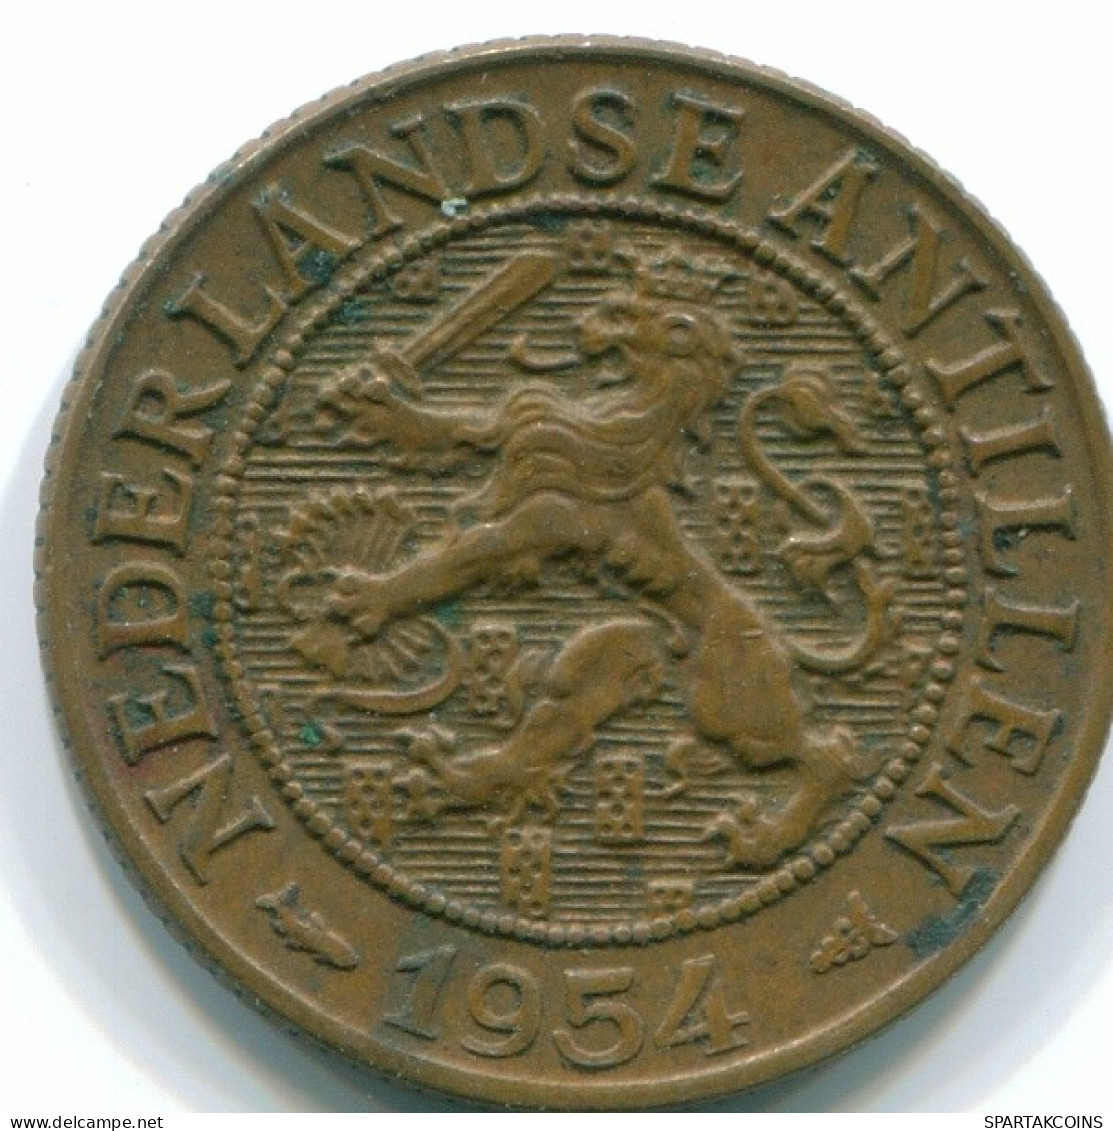 1 CENT 1954 NETHERLANDS ANTILLES Bronze Fish Colonial Coin #S11014.U.A - Antilles Néerlandaises